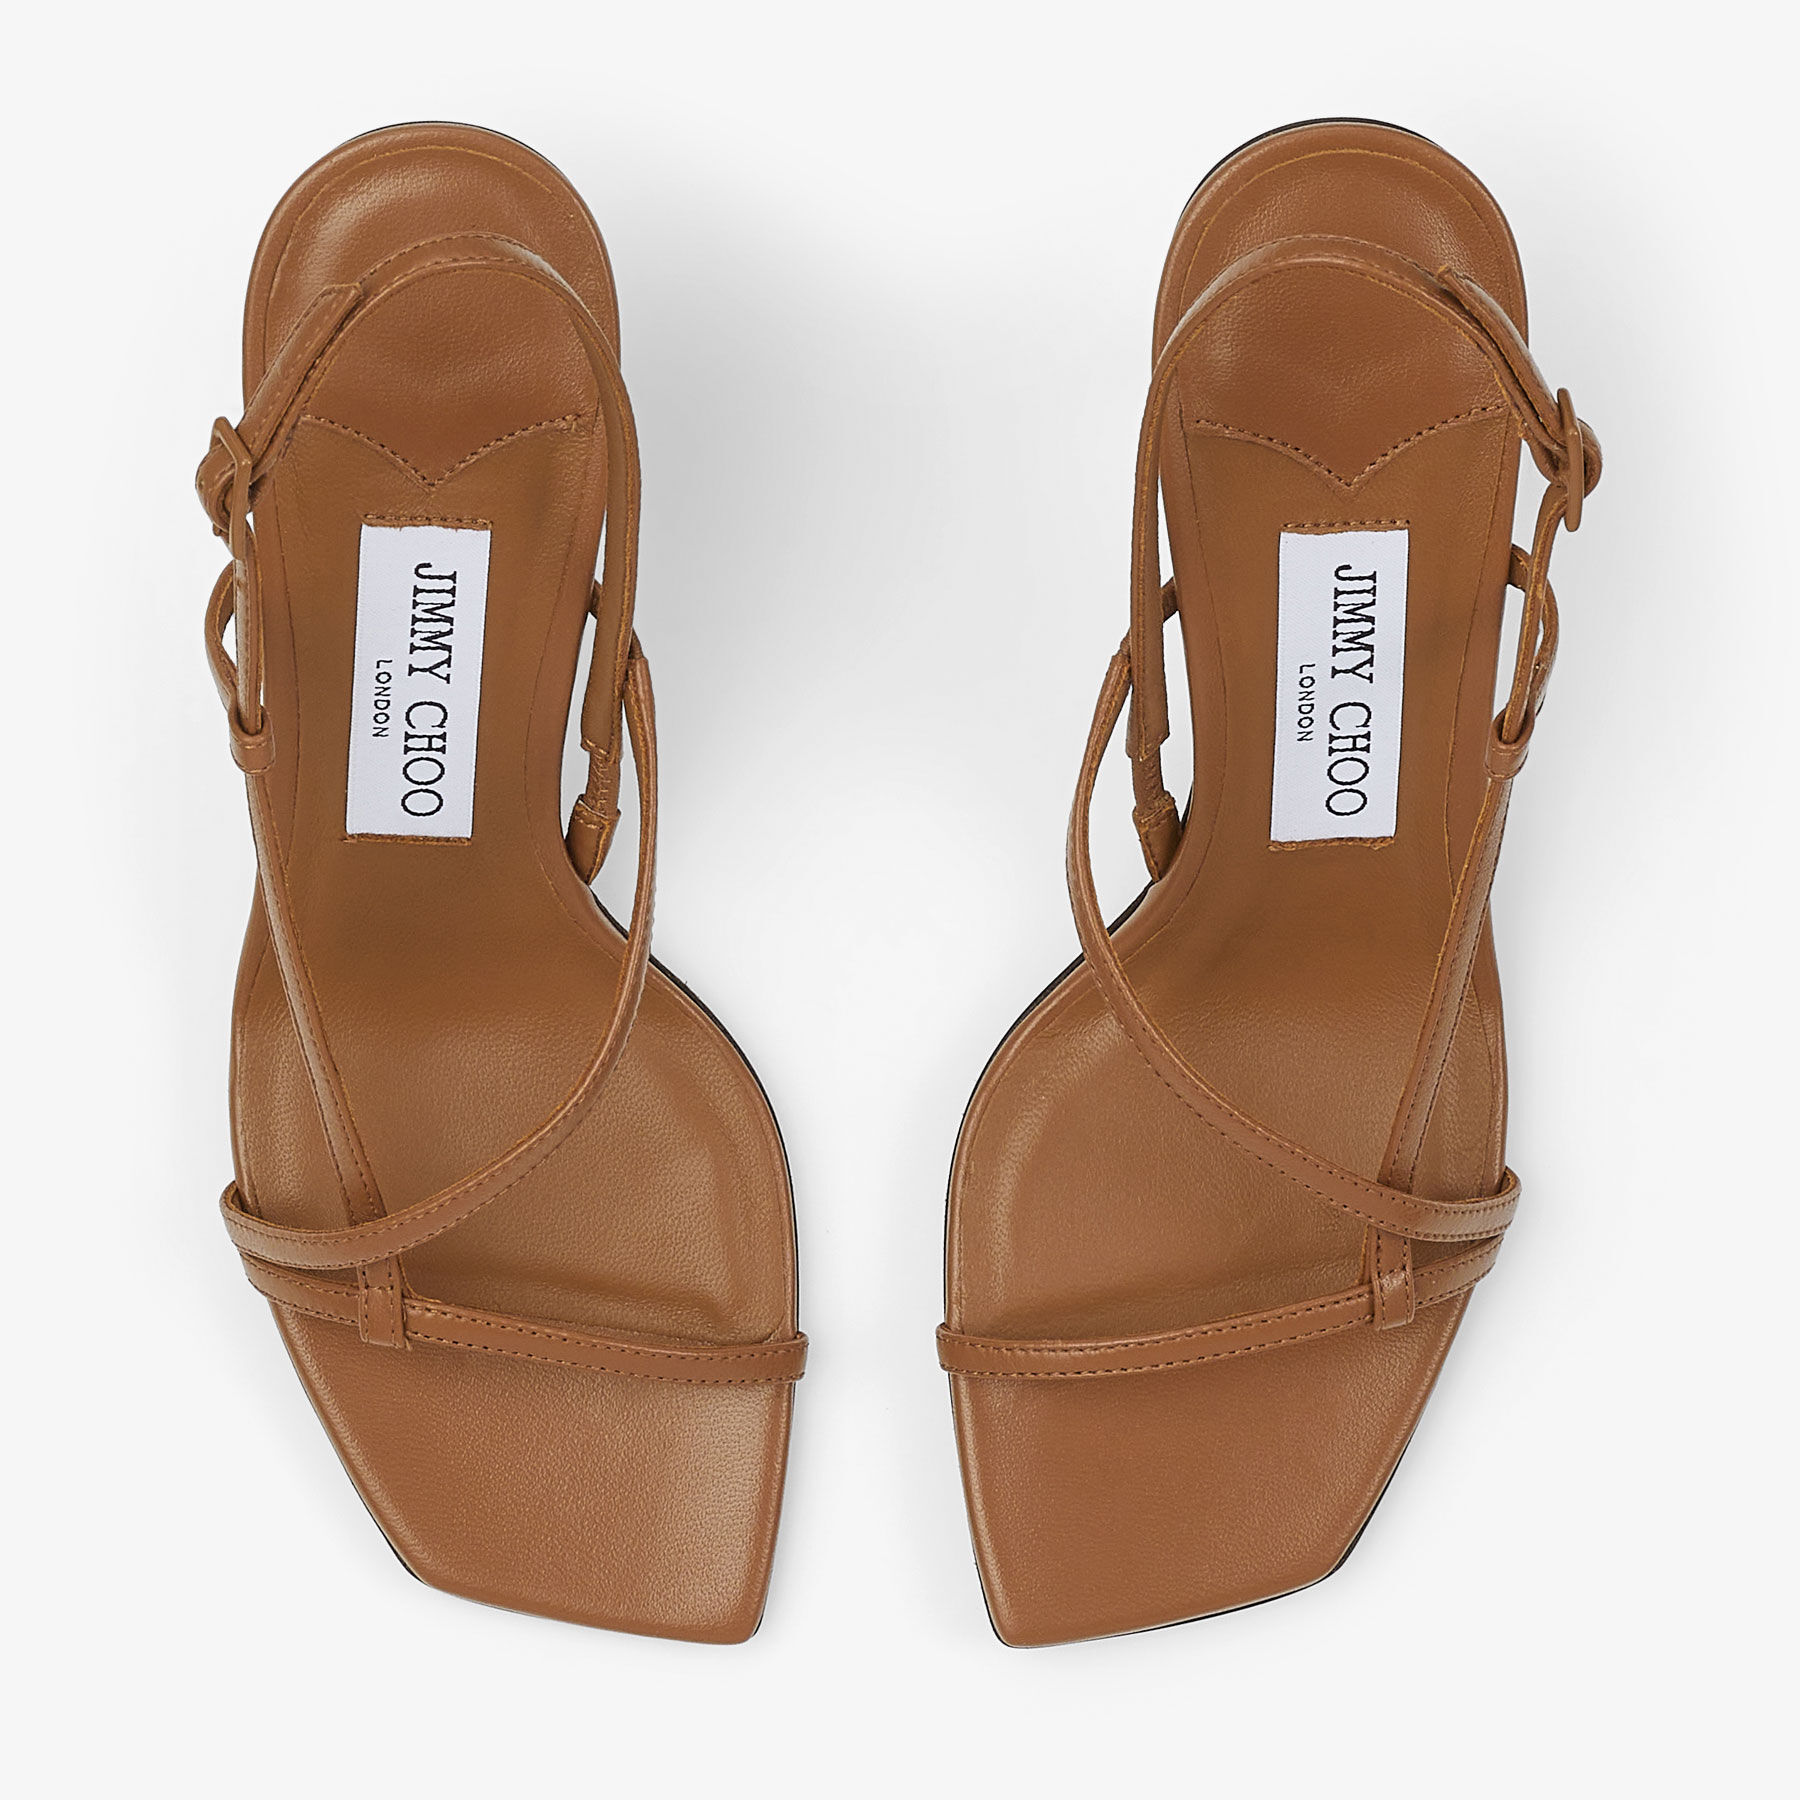 Etana 80 | Tan/Tortoise Nappa Leather Sandals | JIMMY CHOO